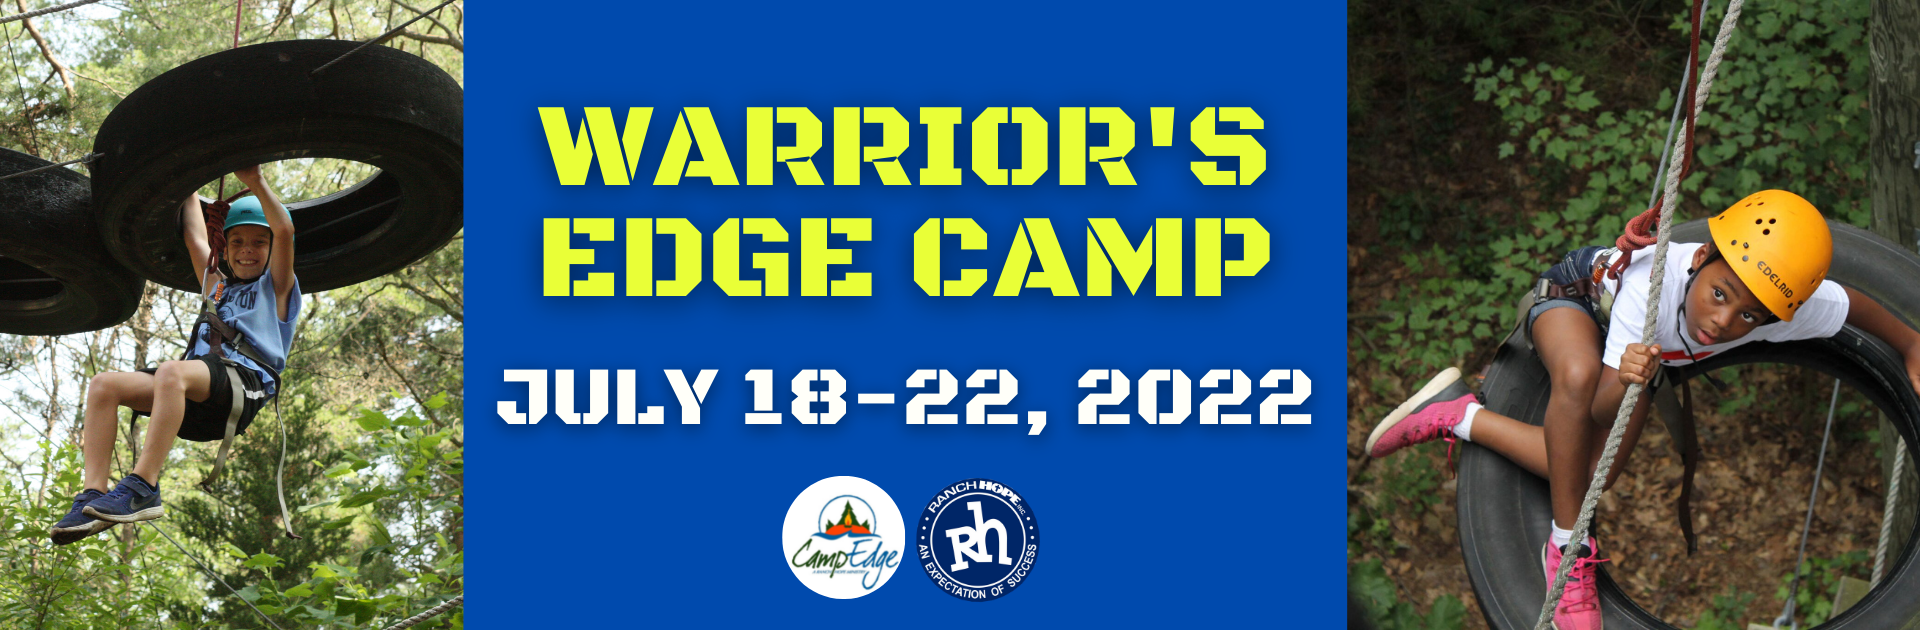 Warriors Camp Website Image